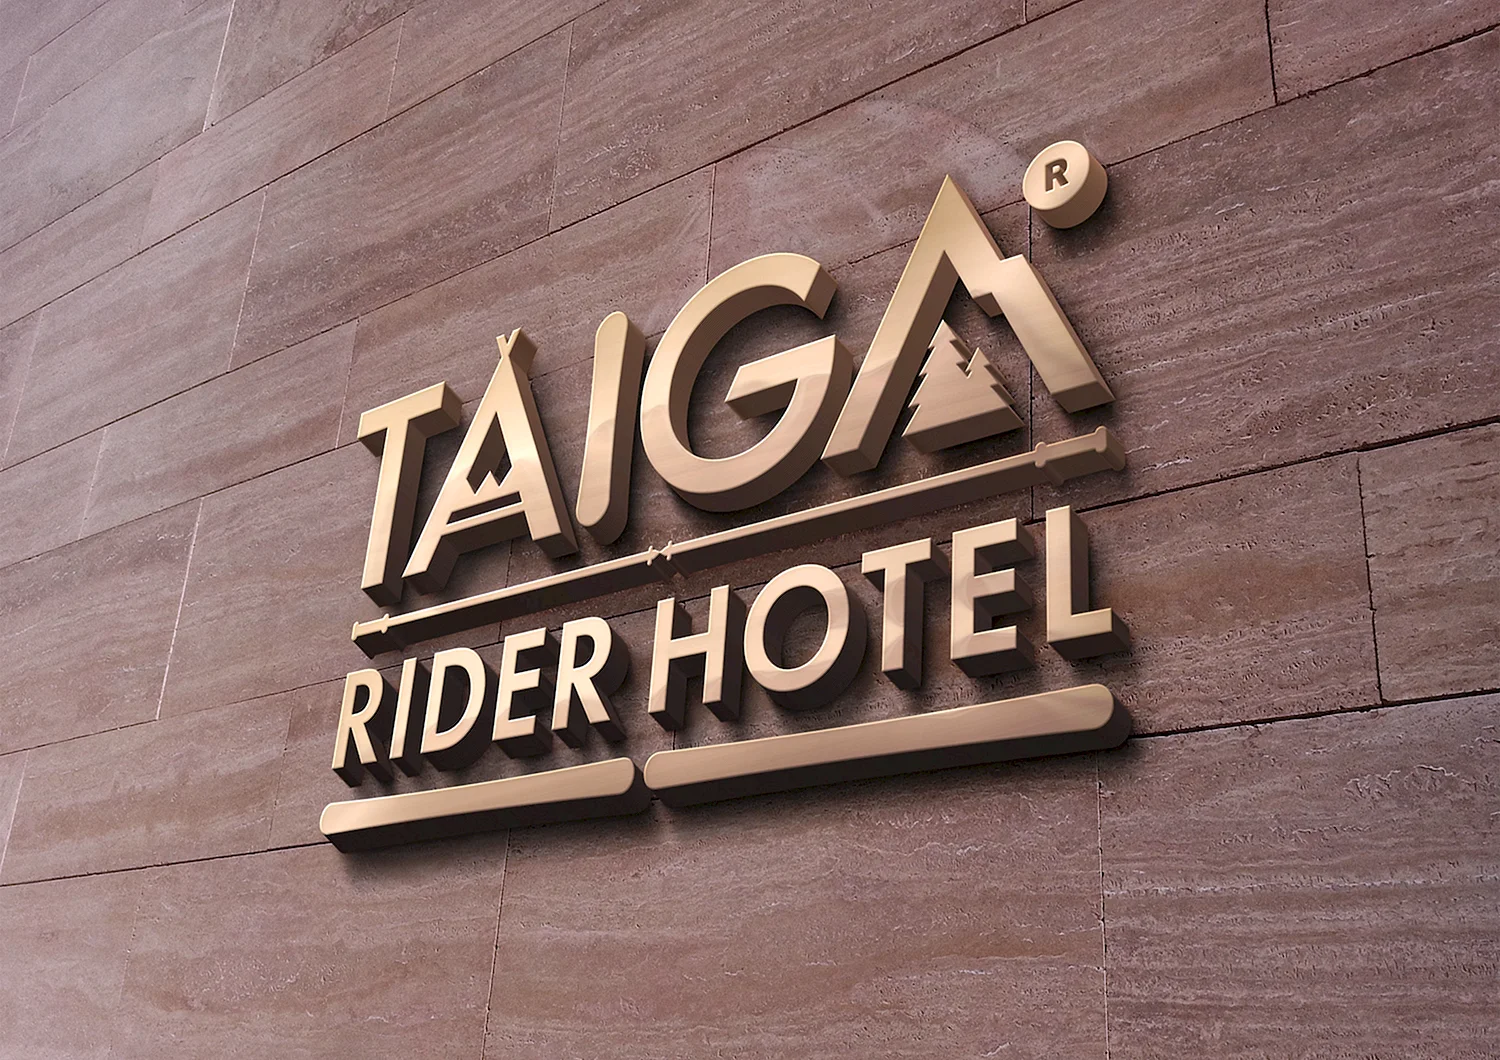 Логотип гостиницы